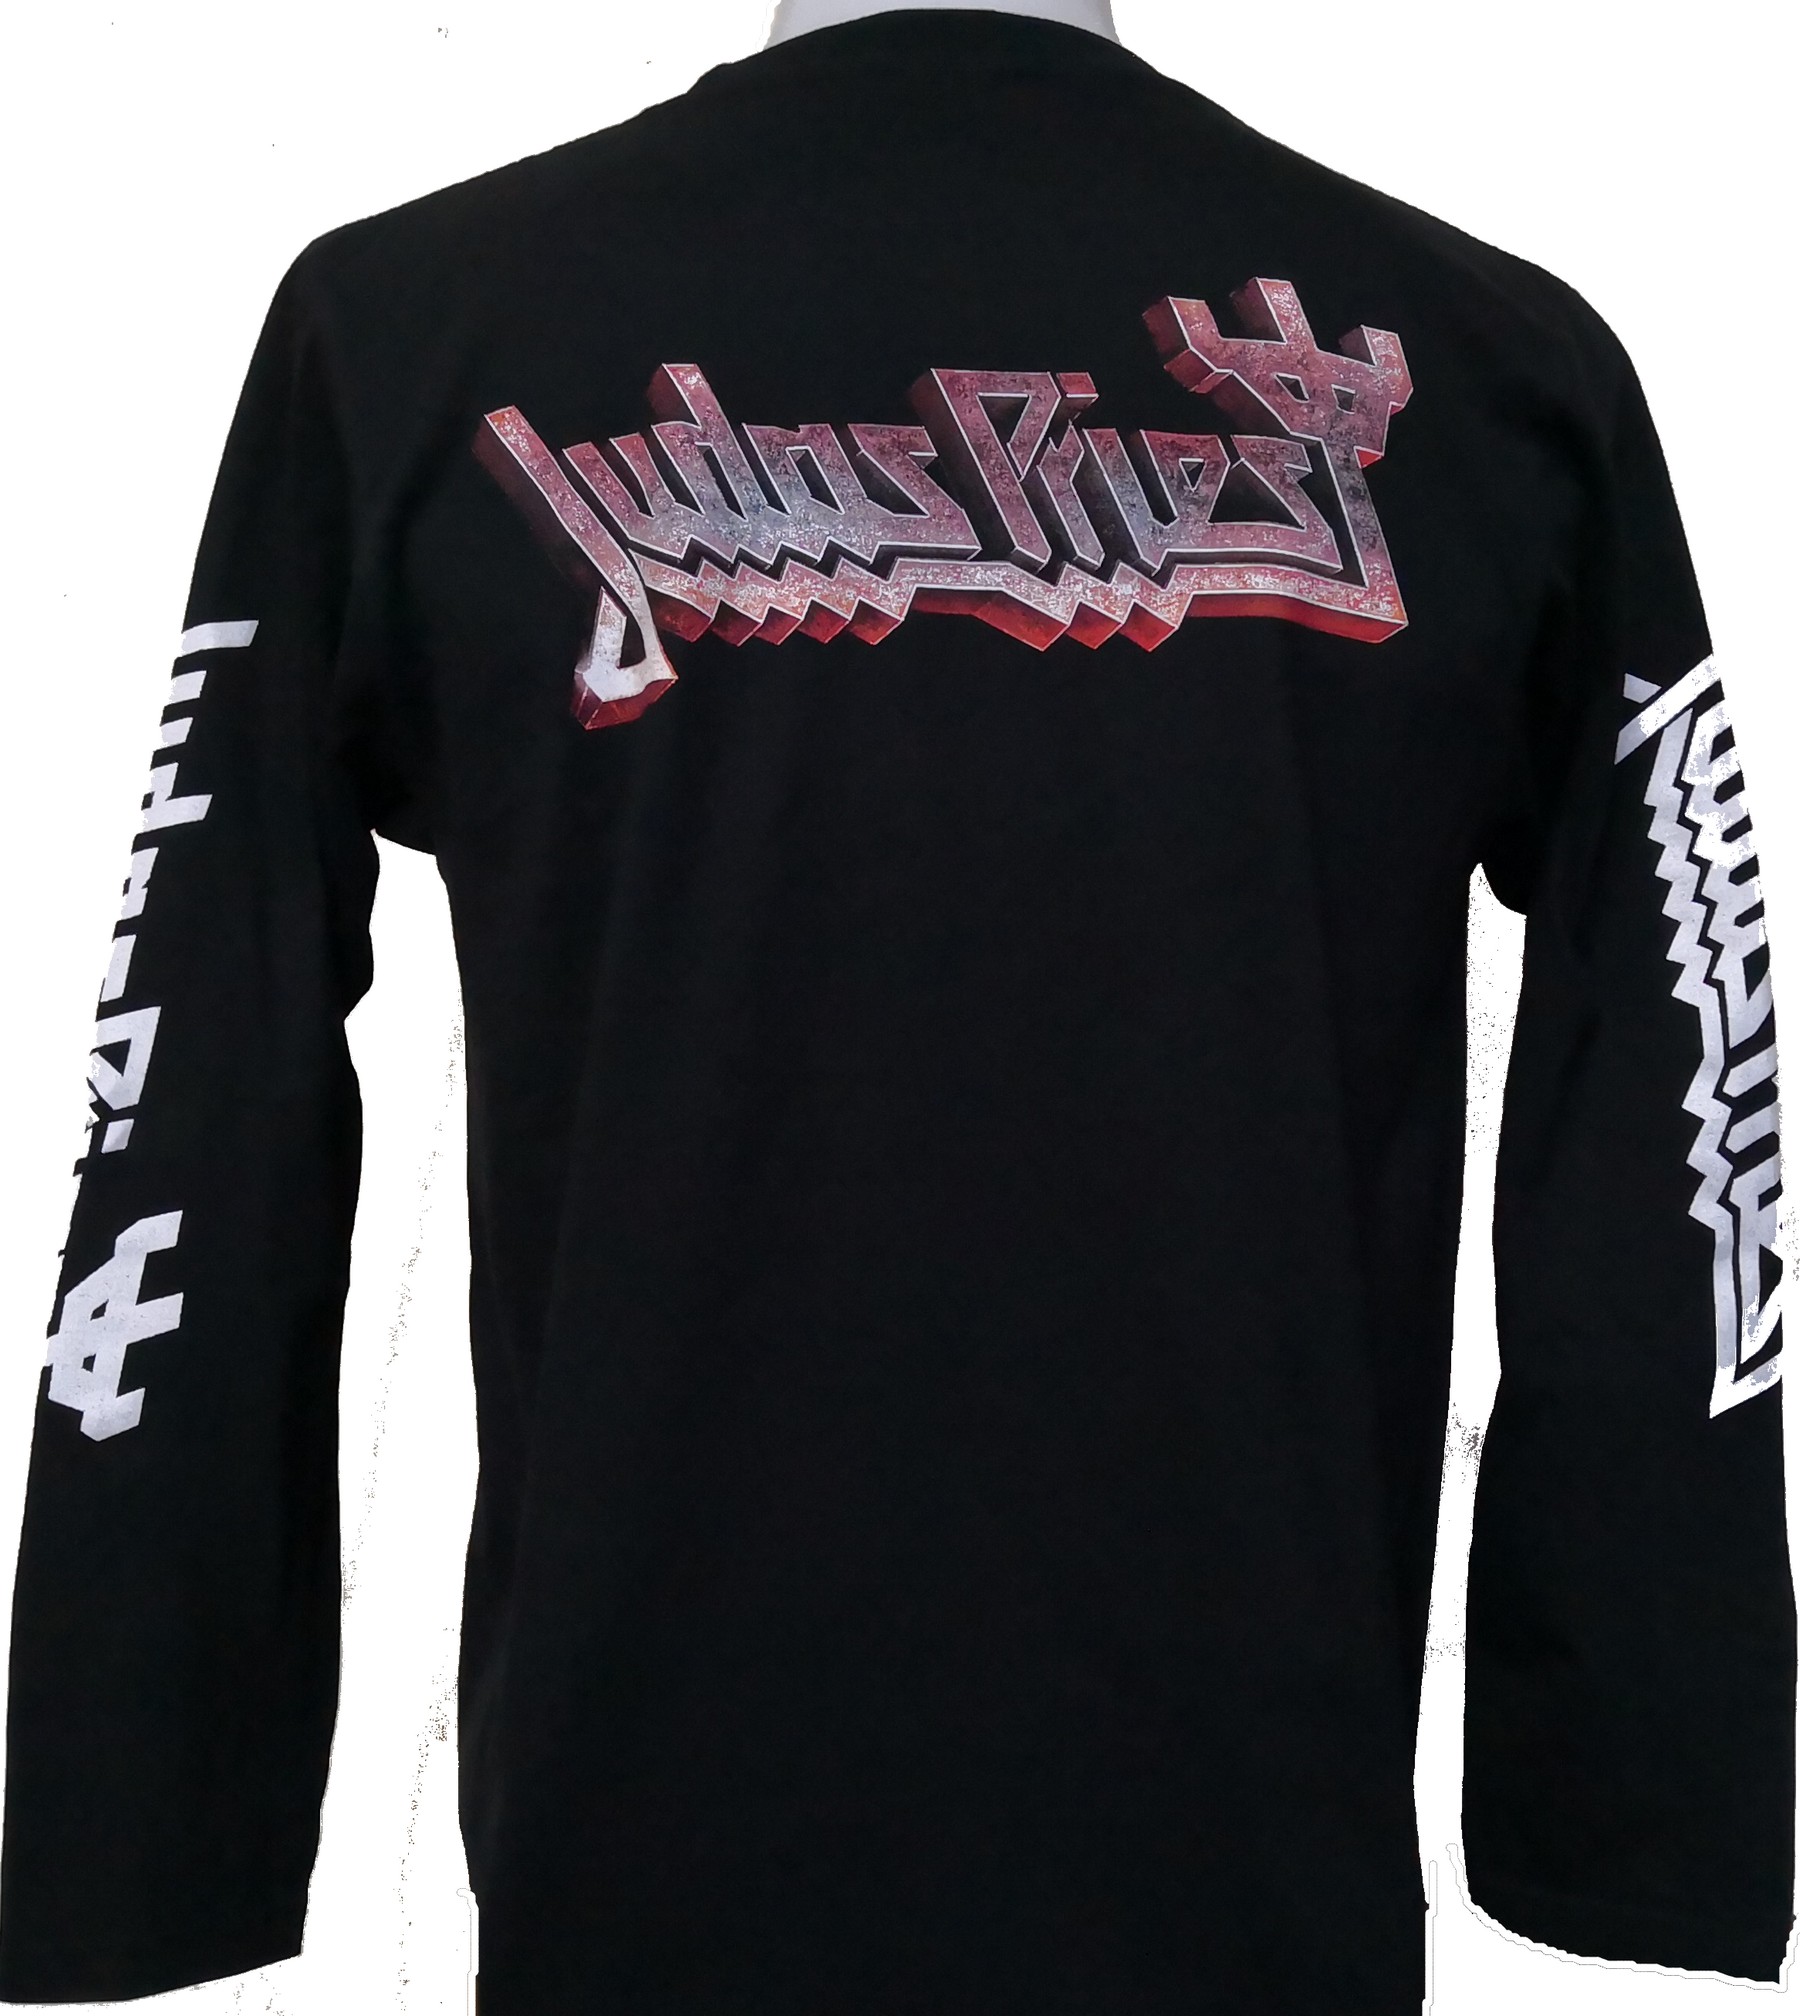 Judas Priest long-sleeved t-shirt size XXXL – RoxxBKK